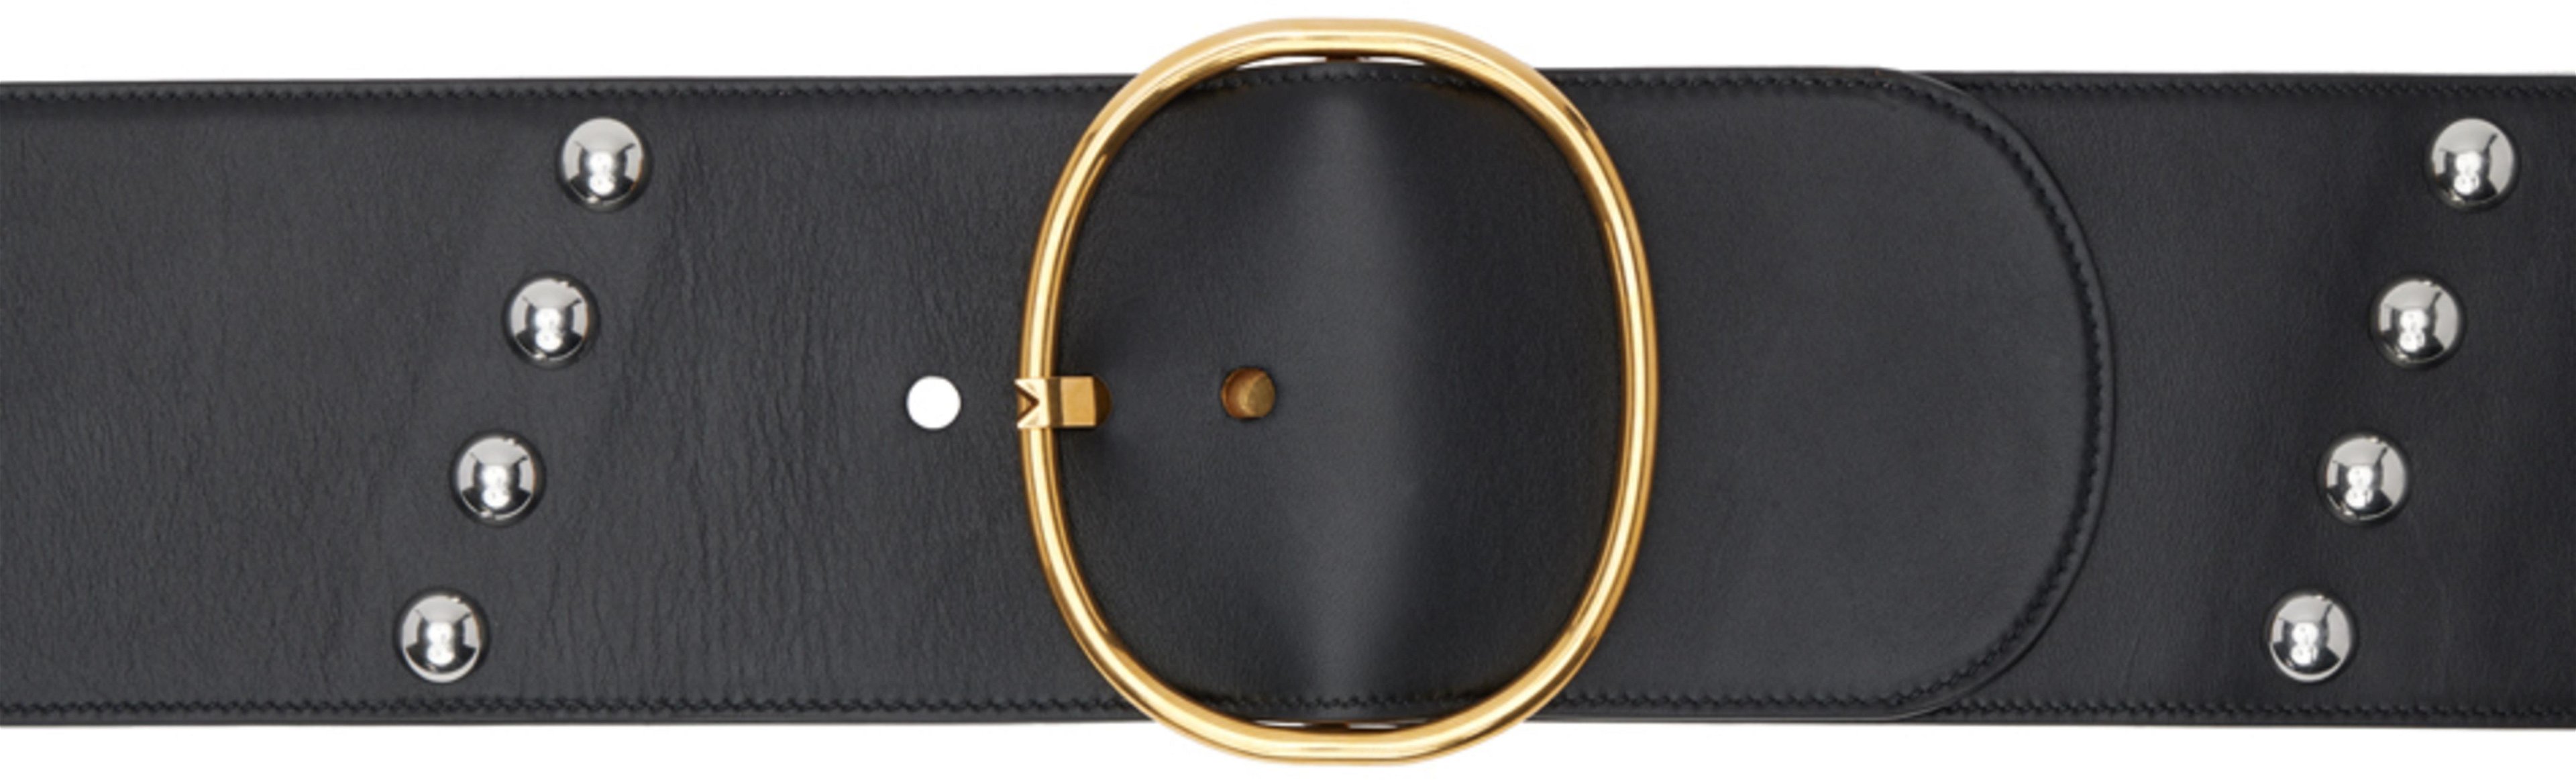 Black Ovale Studded Belt by ALAIA